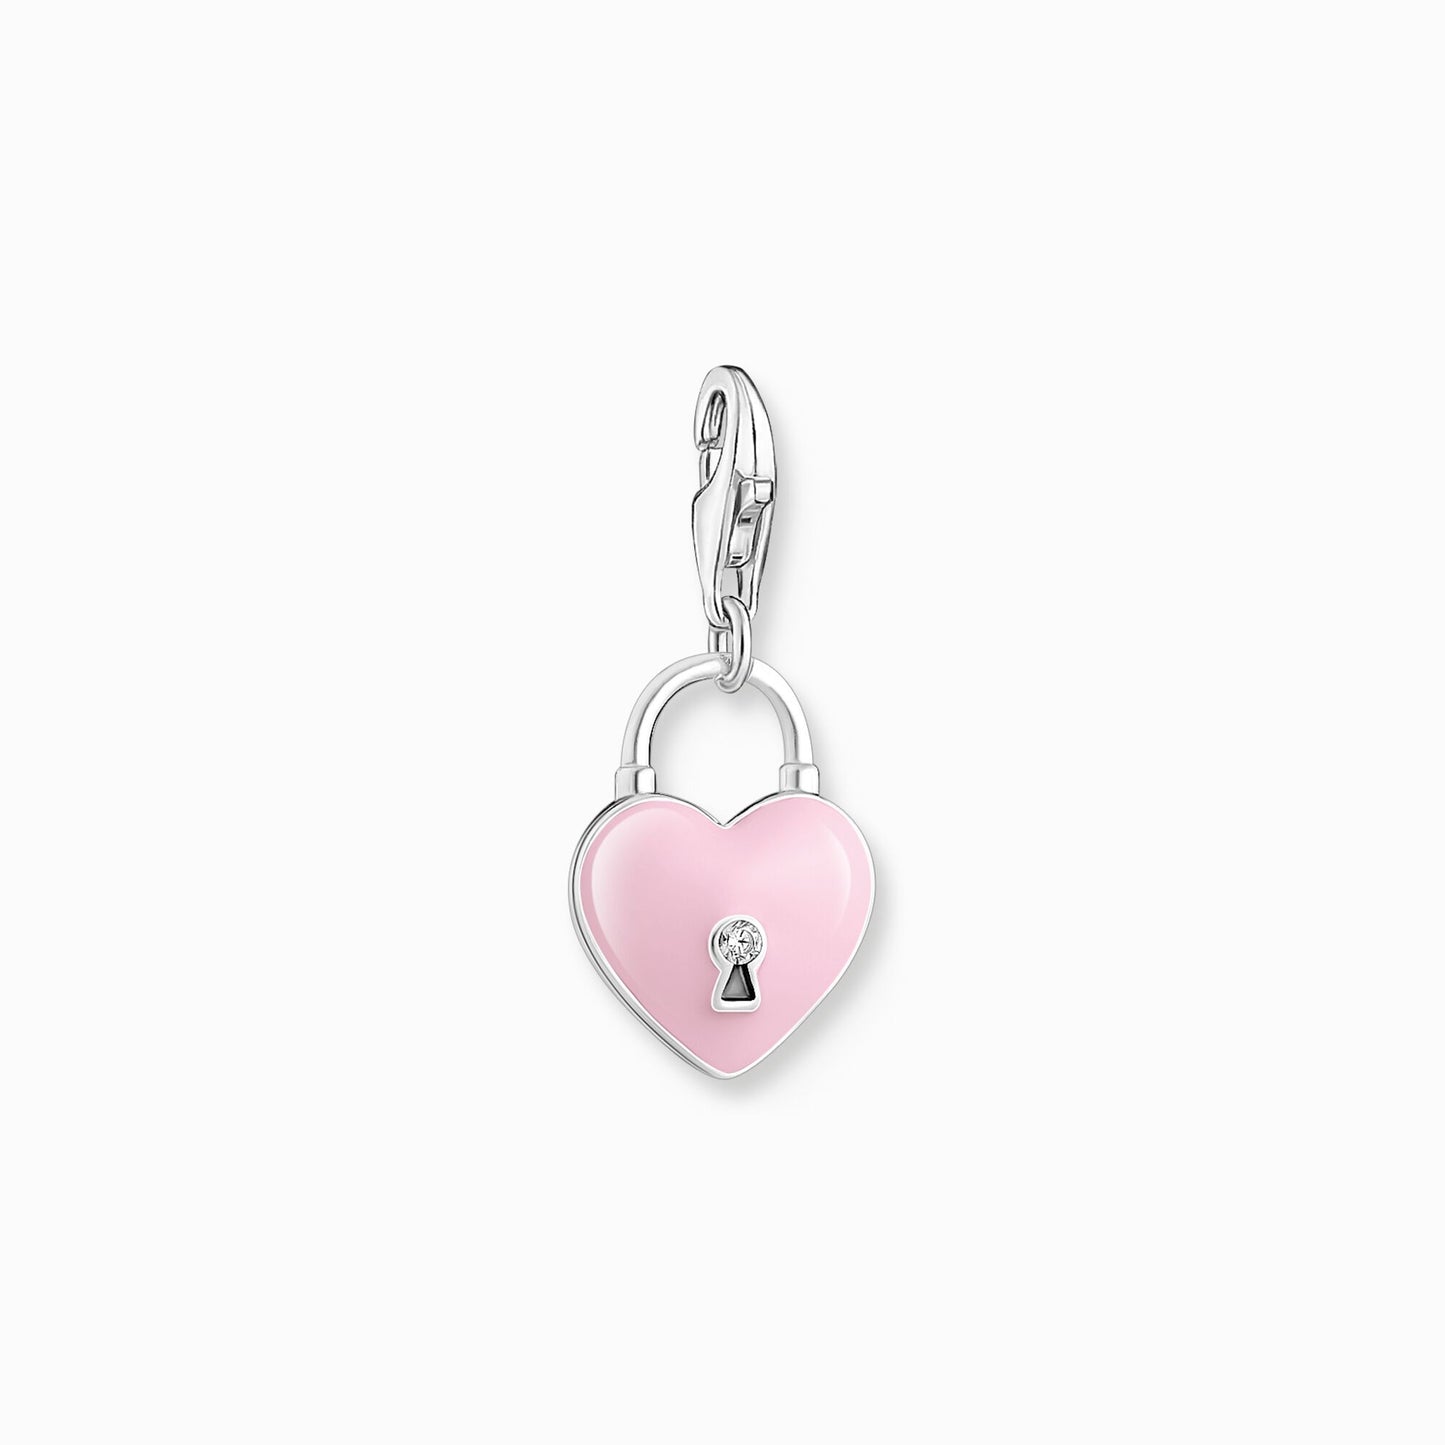 Thomas Sabo Charm candado rosa en forma de corazón 2071-691-9